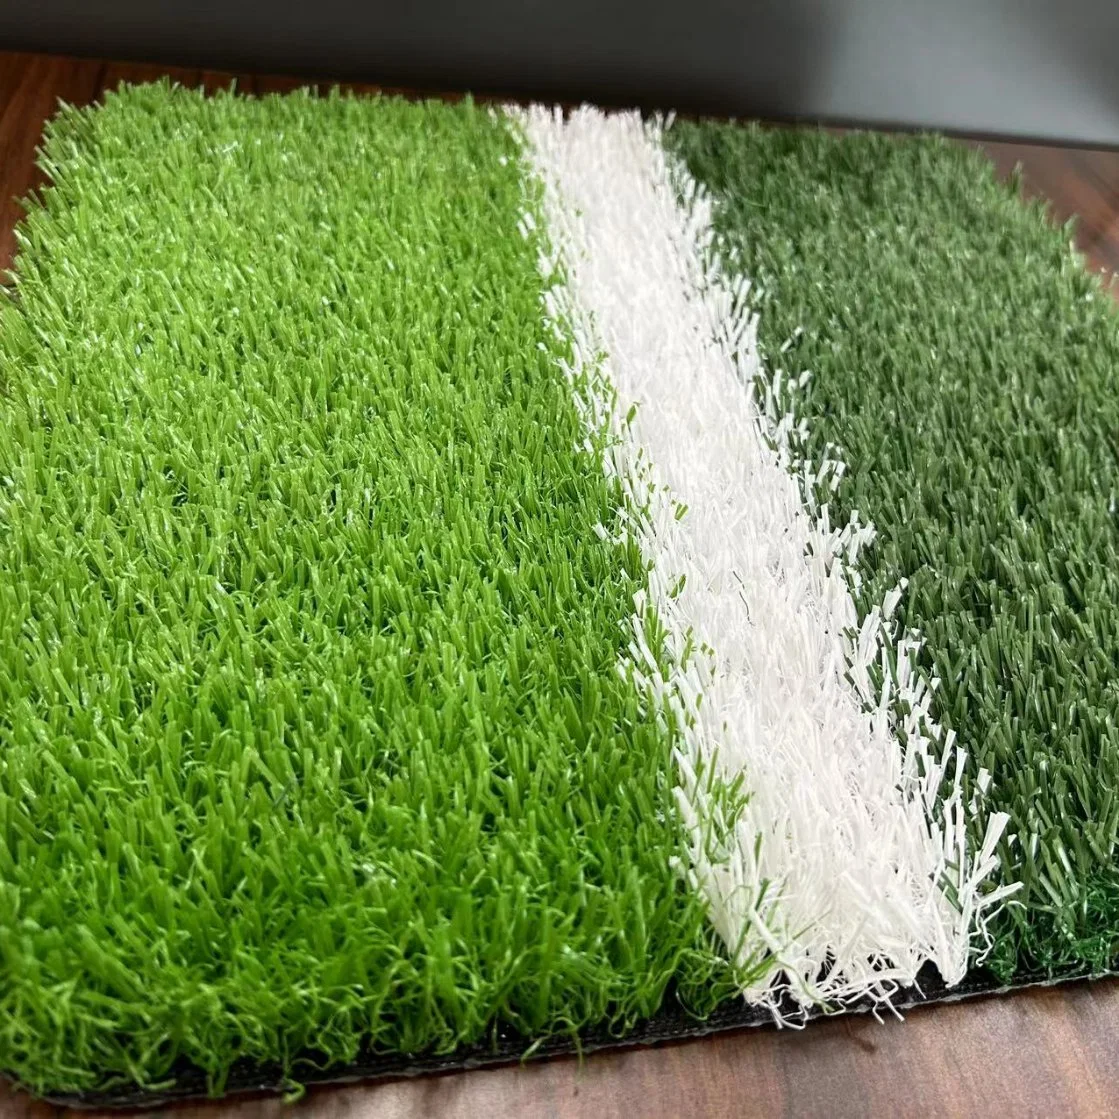 Césped alfombra sintético Golf Tenis Fútbol Deportes Pisos césped artificial Para el jardín